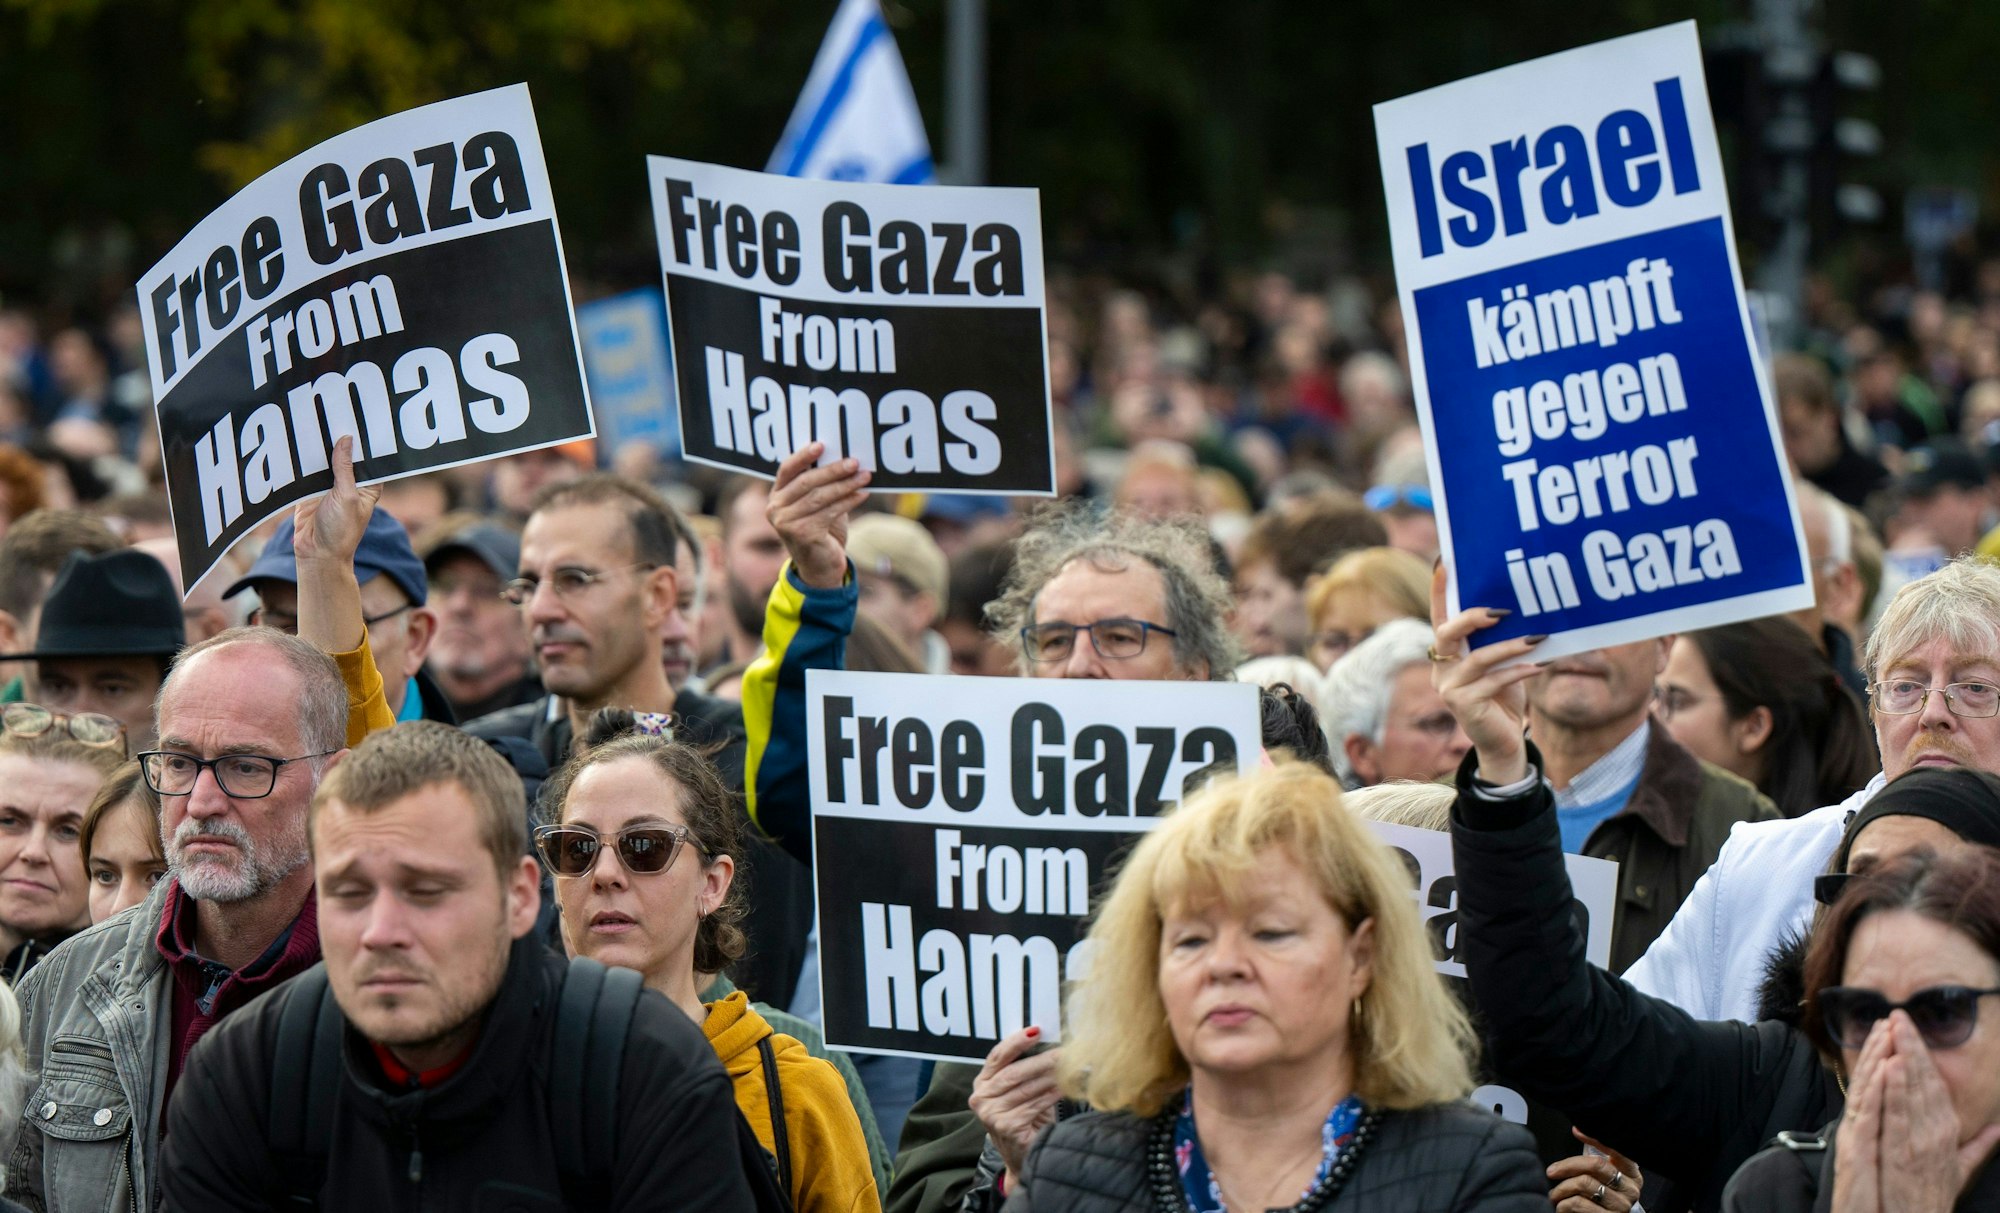 Berlin: Teilnehmer der Kundgebung halten Plakate hoch: „Free Gaza from Hamas“und „Israel kämpft gegen Terror in Gaza“ steht auf diesen.